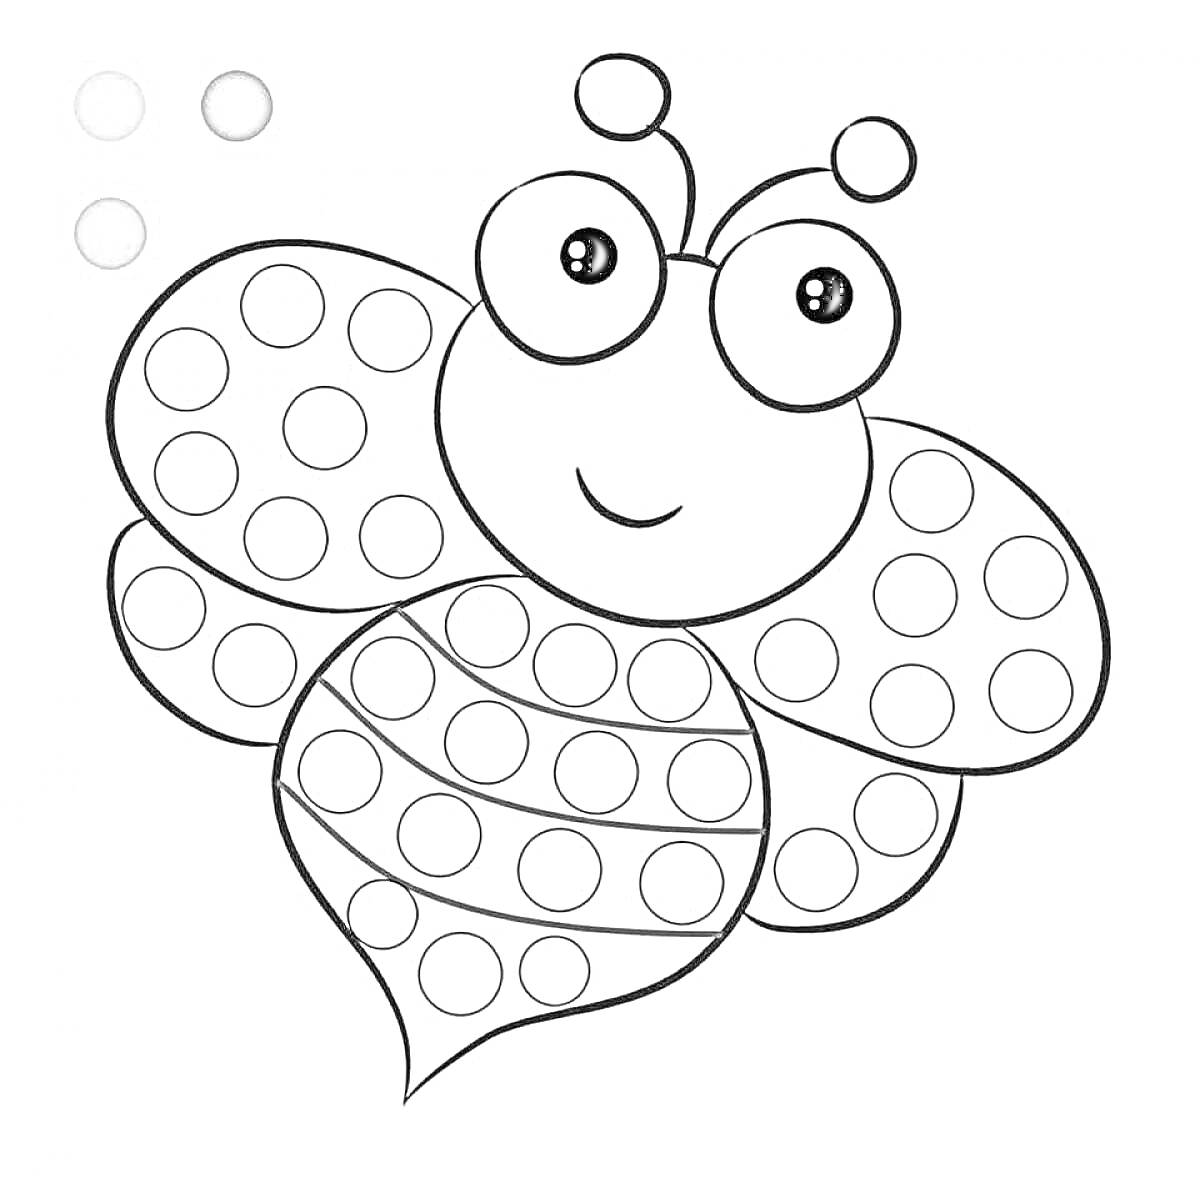 Раскраска пальчиковая раскраска с бабочкой, кружочки для раскраски, глаза бабочки, усики бабочки, цветные образцы (желтый, коричневый, голубой)